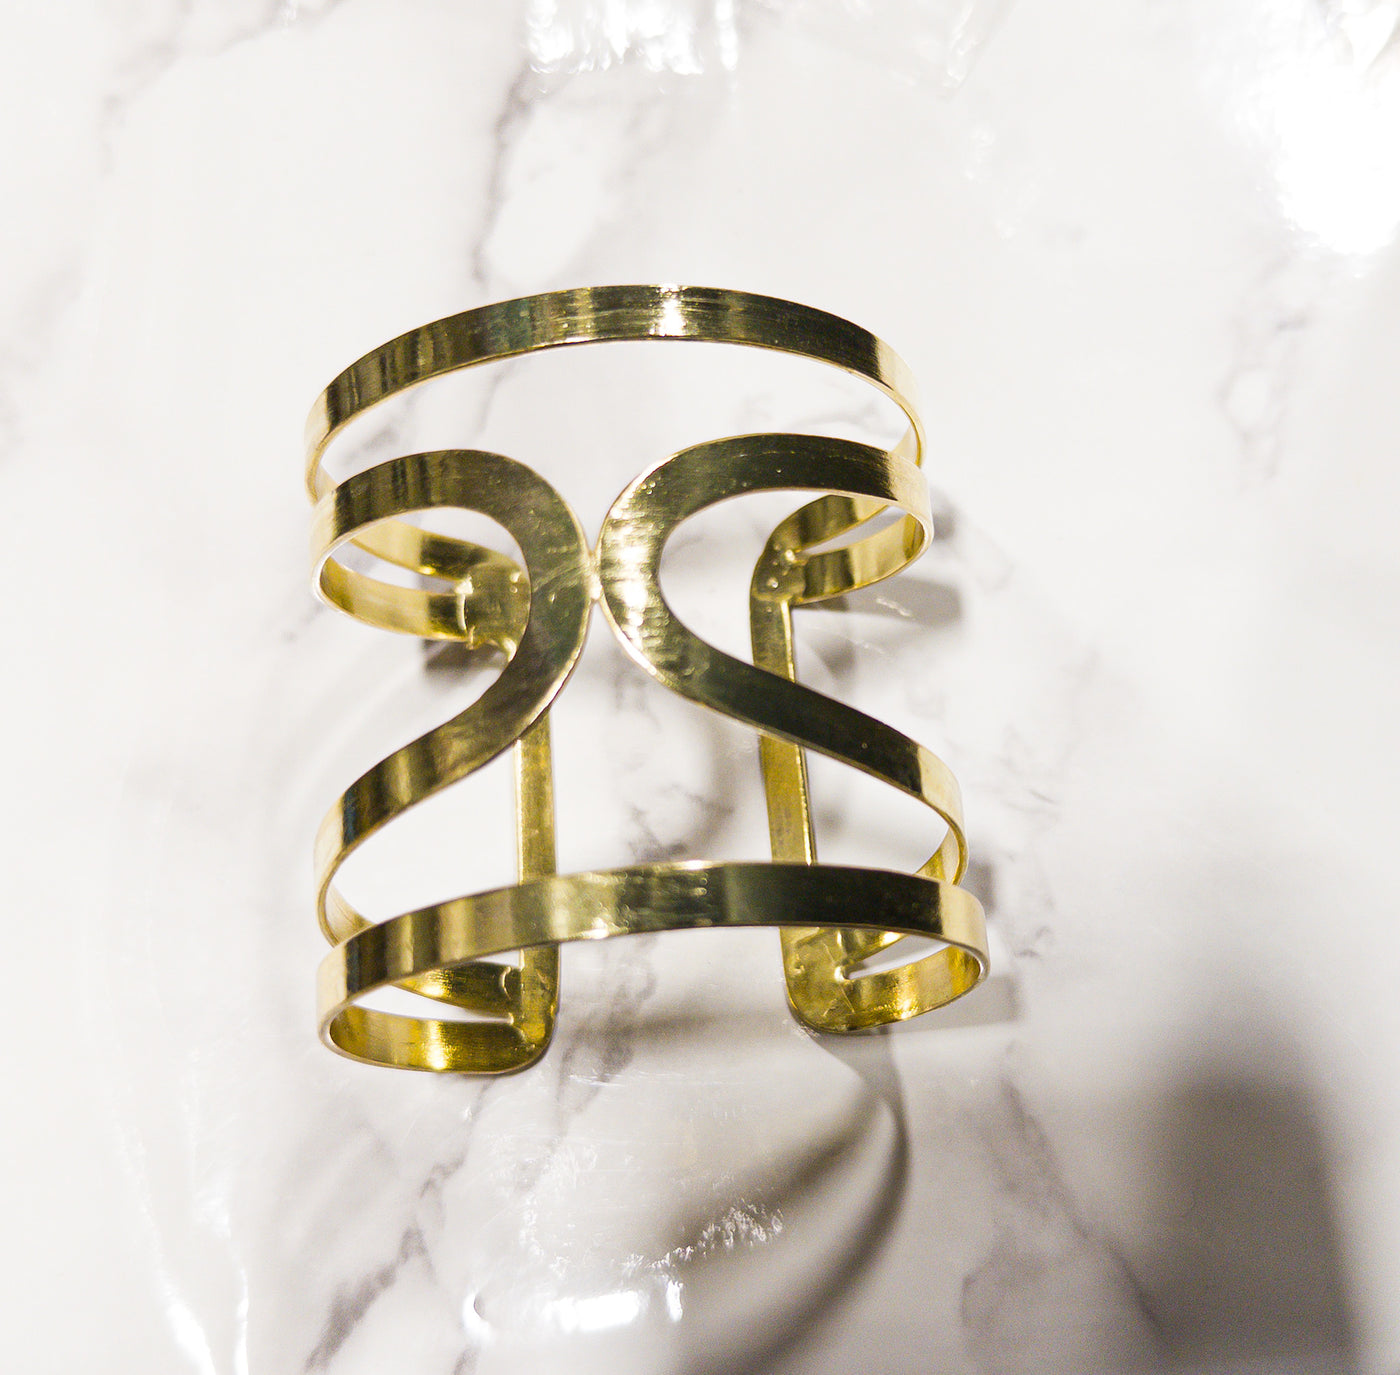 Seong Brass lightweight Bangle/cuff/bracelet